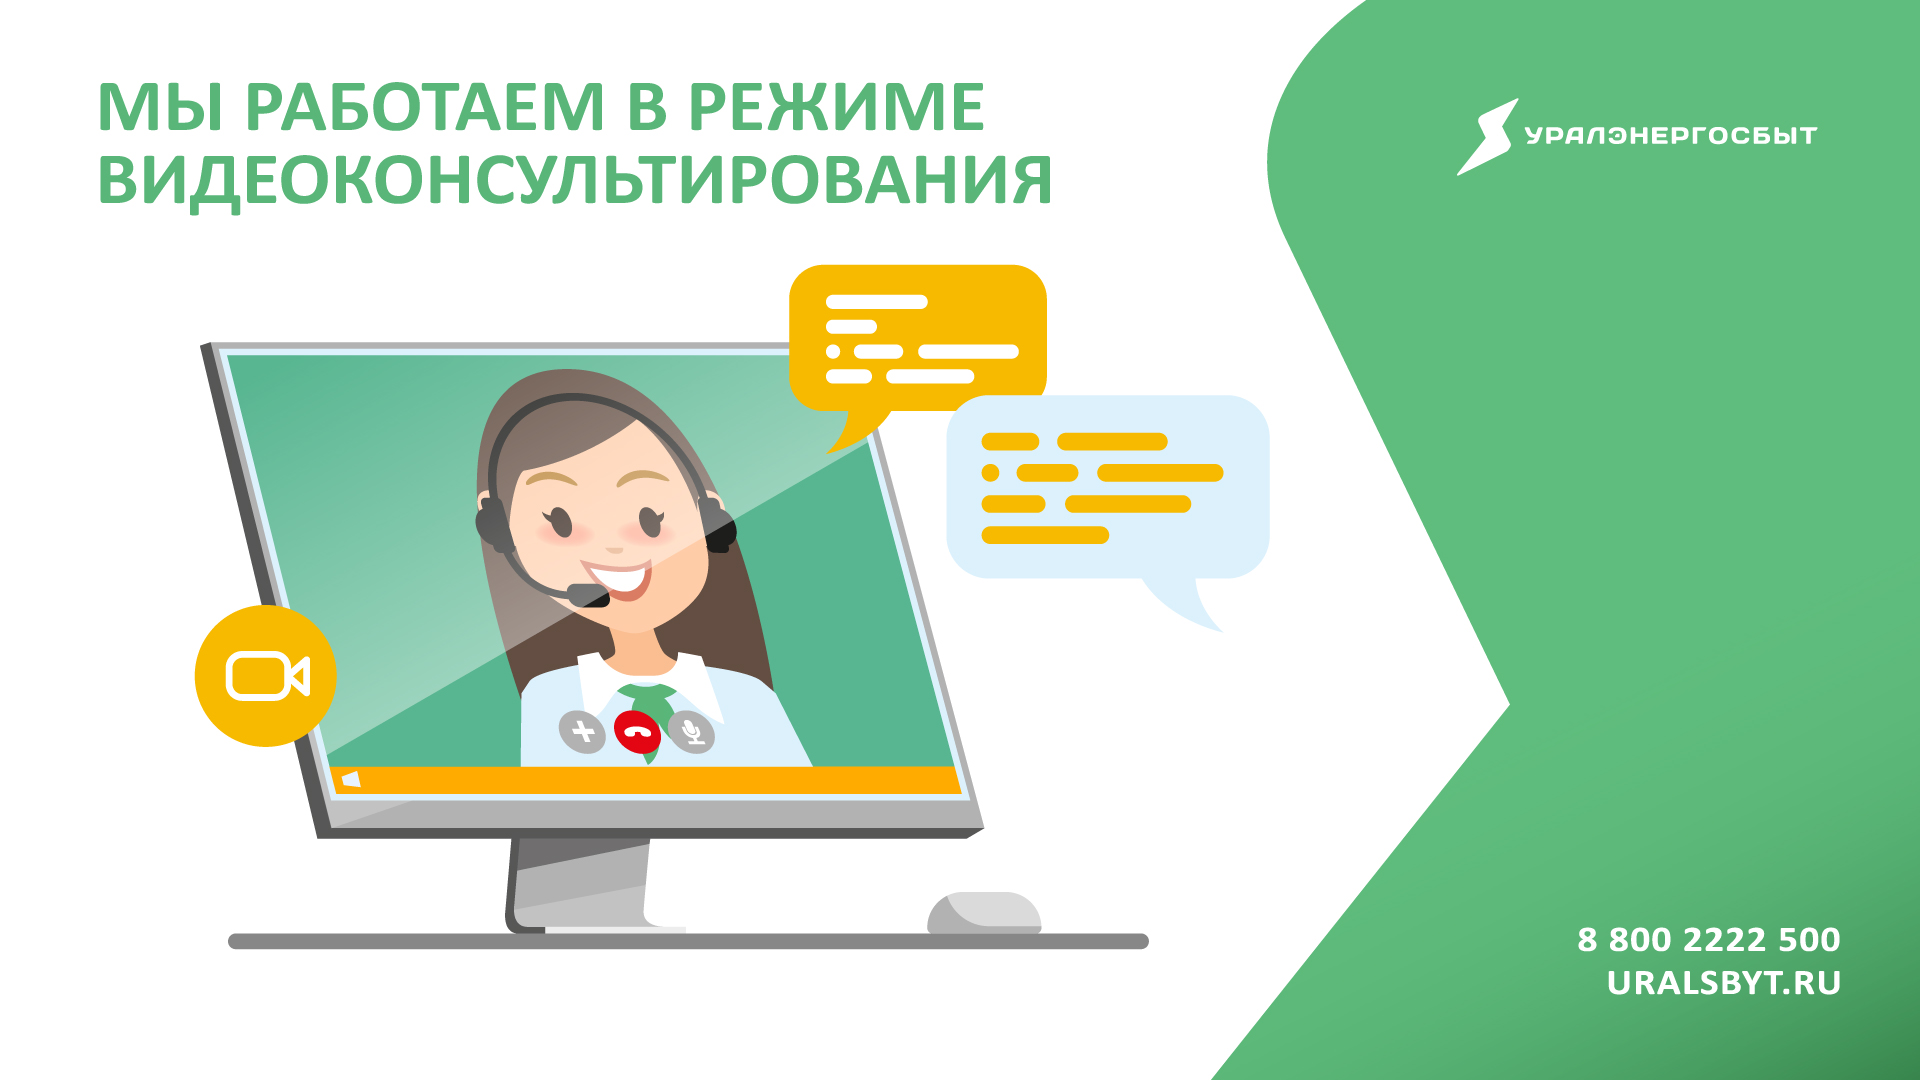 «Уралэнергосбыт» открывает офисы очного обслуживания в новом формате